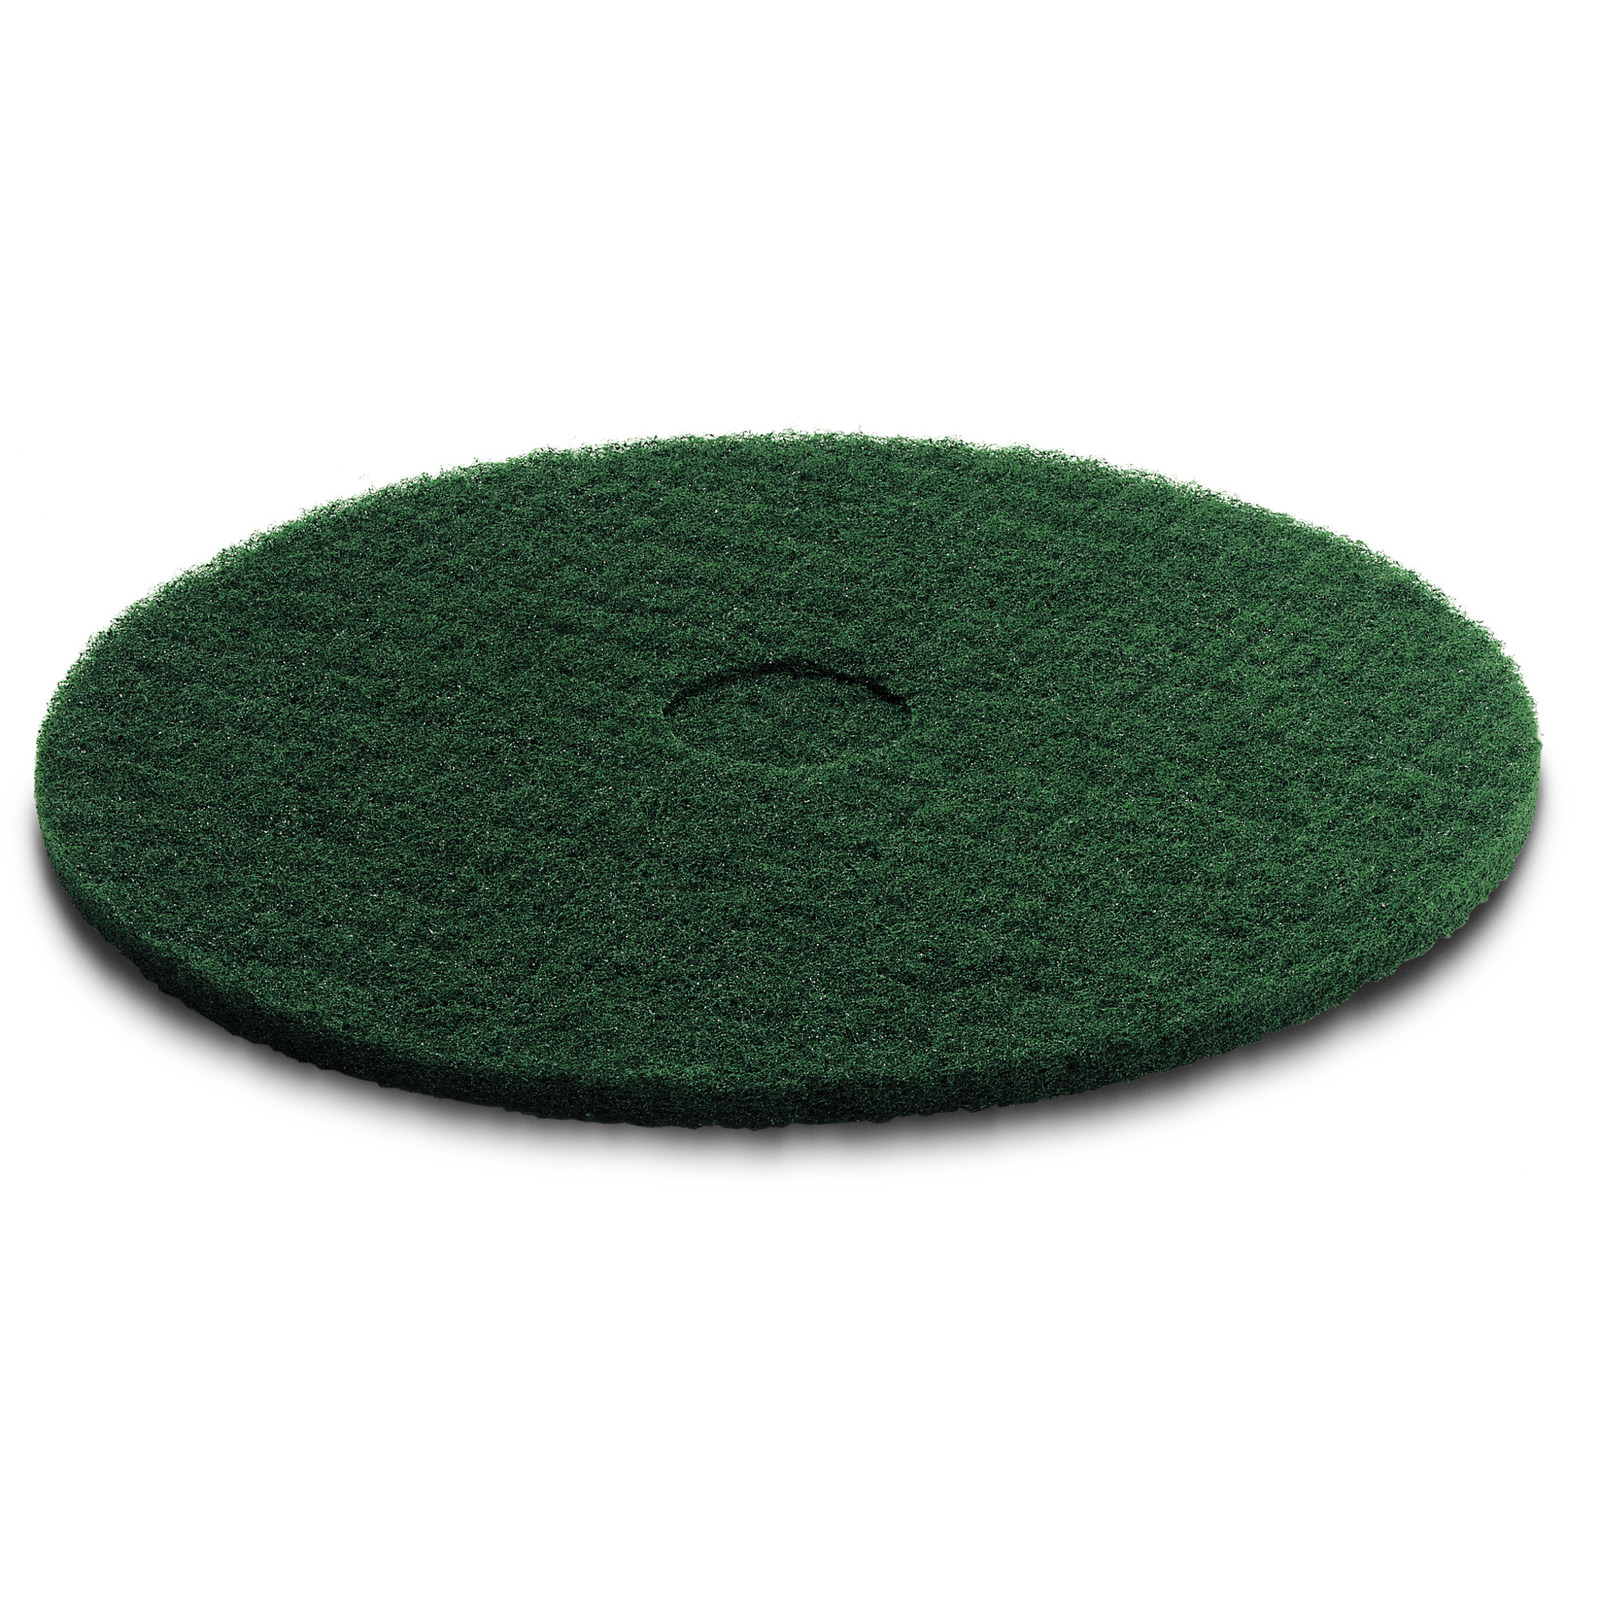 Karcher Kärcher - Pad, zelený, stredne tvrdý, 508 mm, Stredne tvrdá, Zelená, 508 mm, 5 x